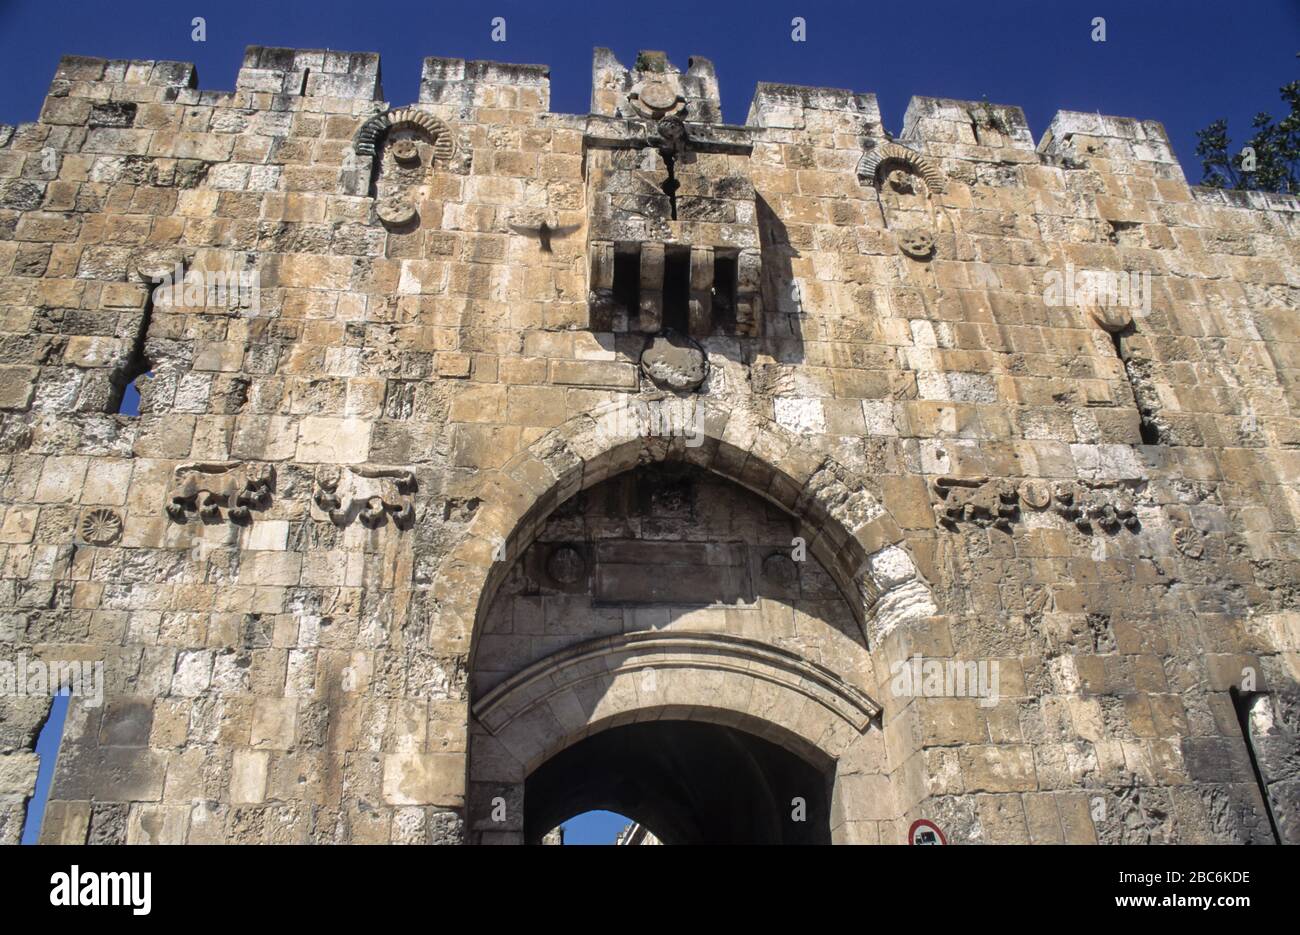 La porte des Lions (aussi la porte Saint-Étienne ou la porte de Sheep) est  une porte située dans les murs de la vieille ville de Jérusalem. C'est  l'une des sept portes ouvertes